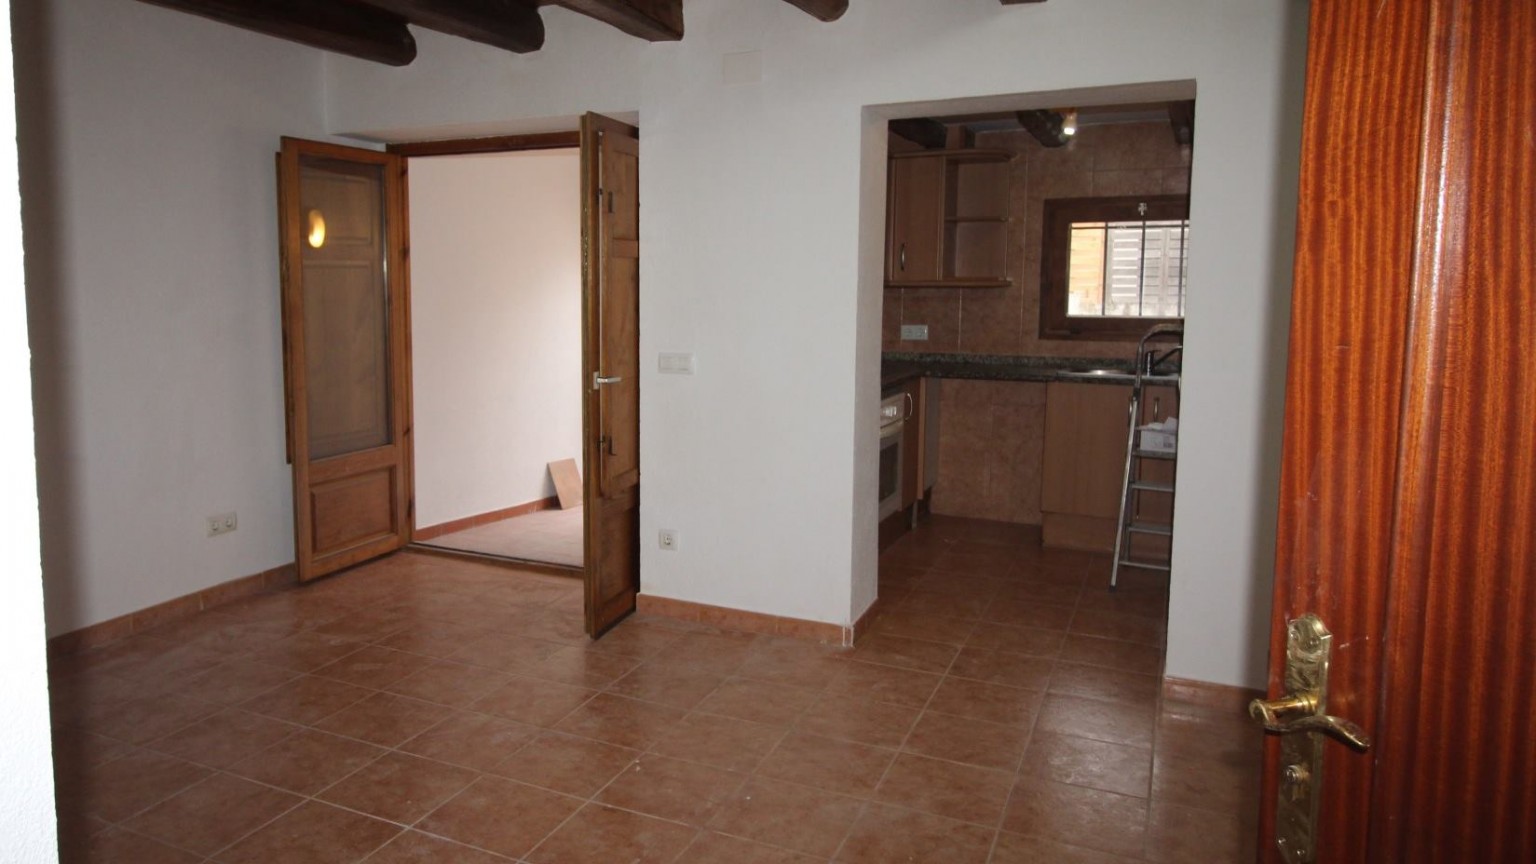 Pis en venda de 2 habitacions, en el municipi de Lladó.